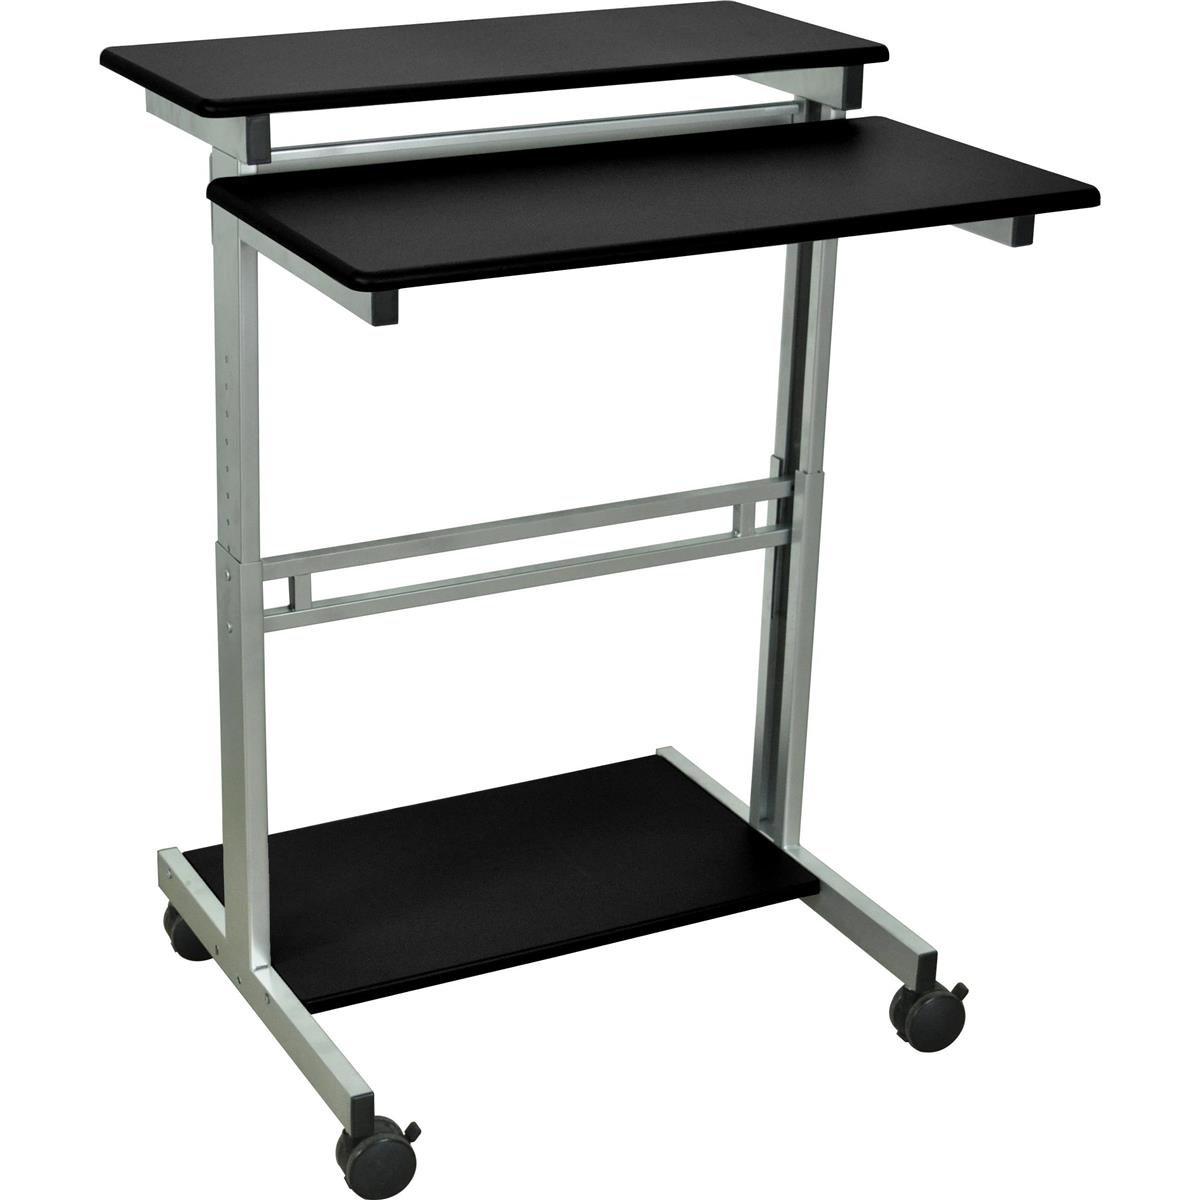 

Luxor 31.5" Wide Adjustable Height Stand-Up Workstation Desk, Black